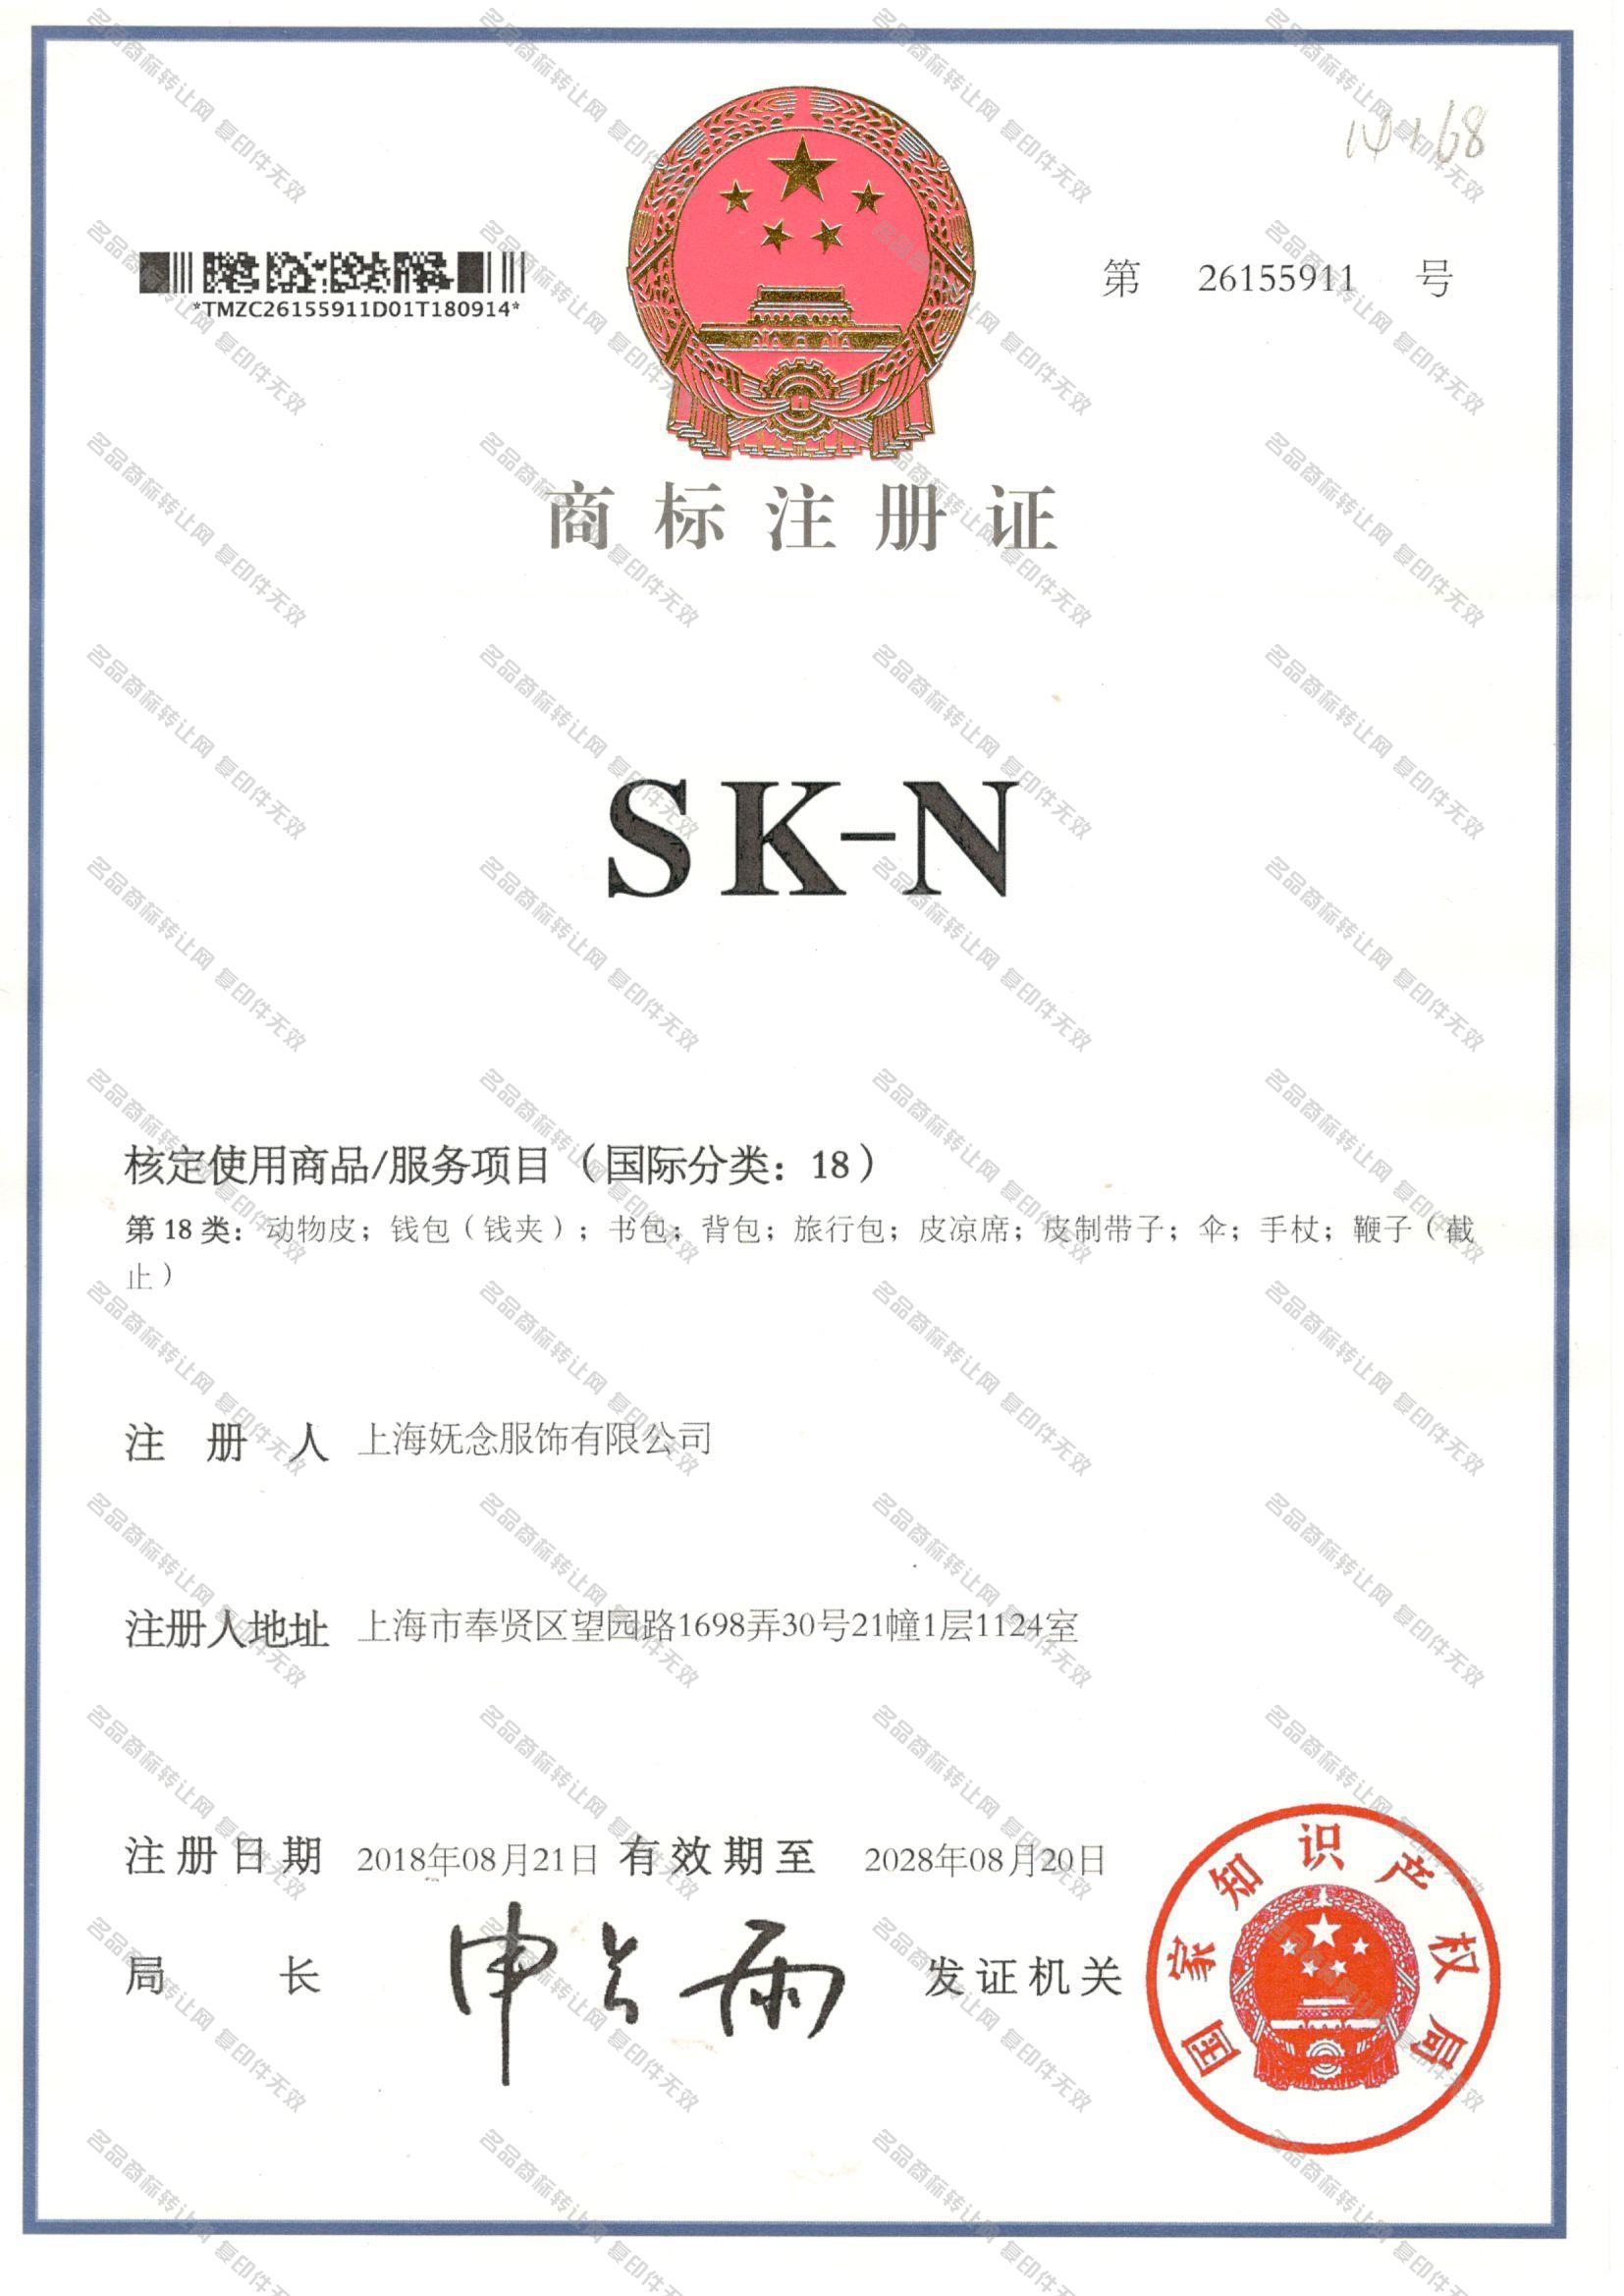 SK-N注册证